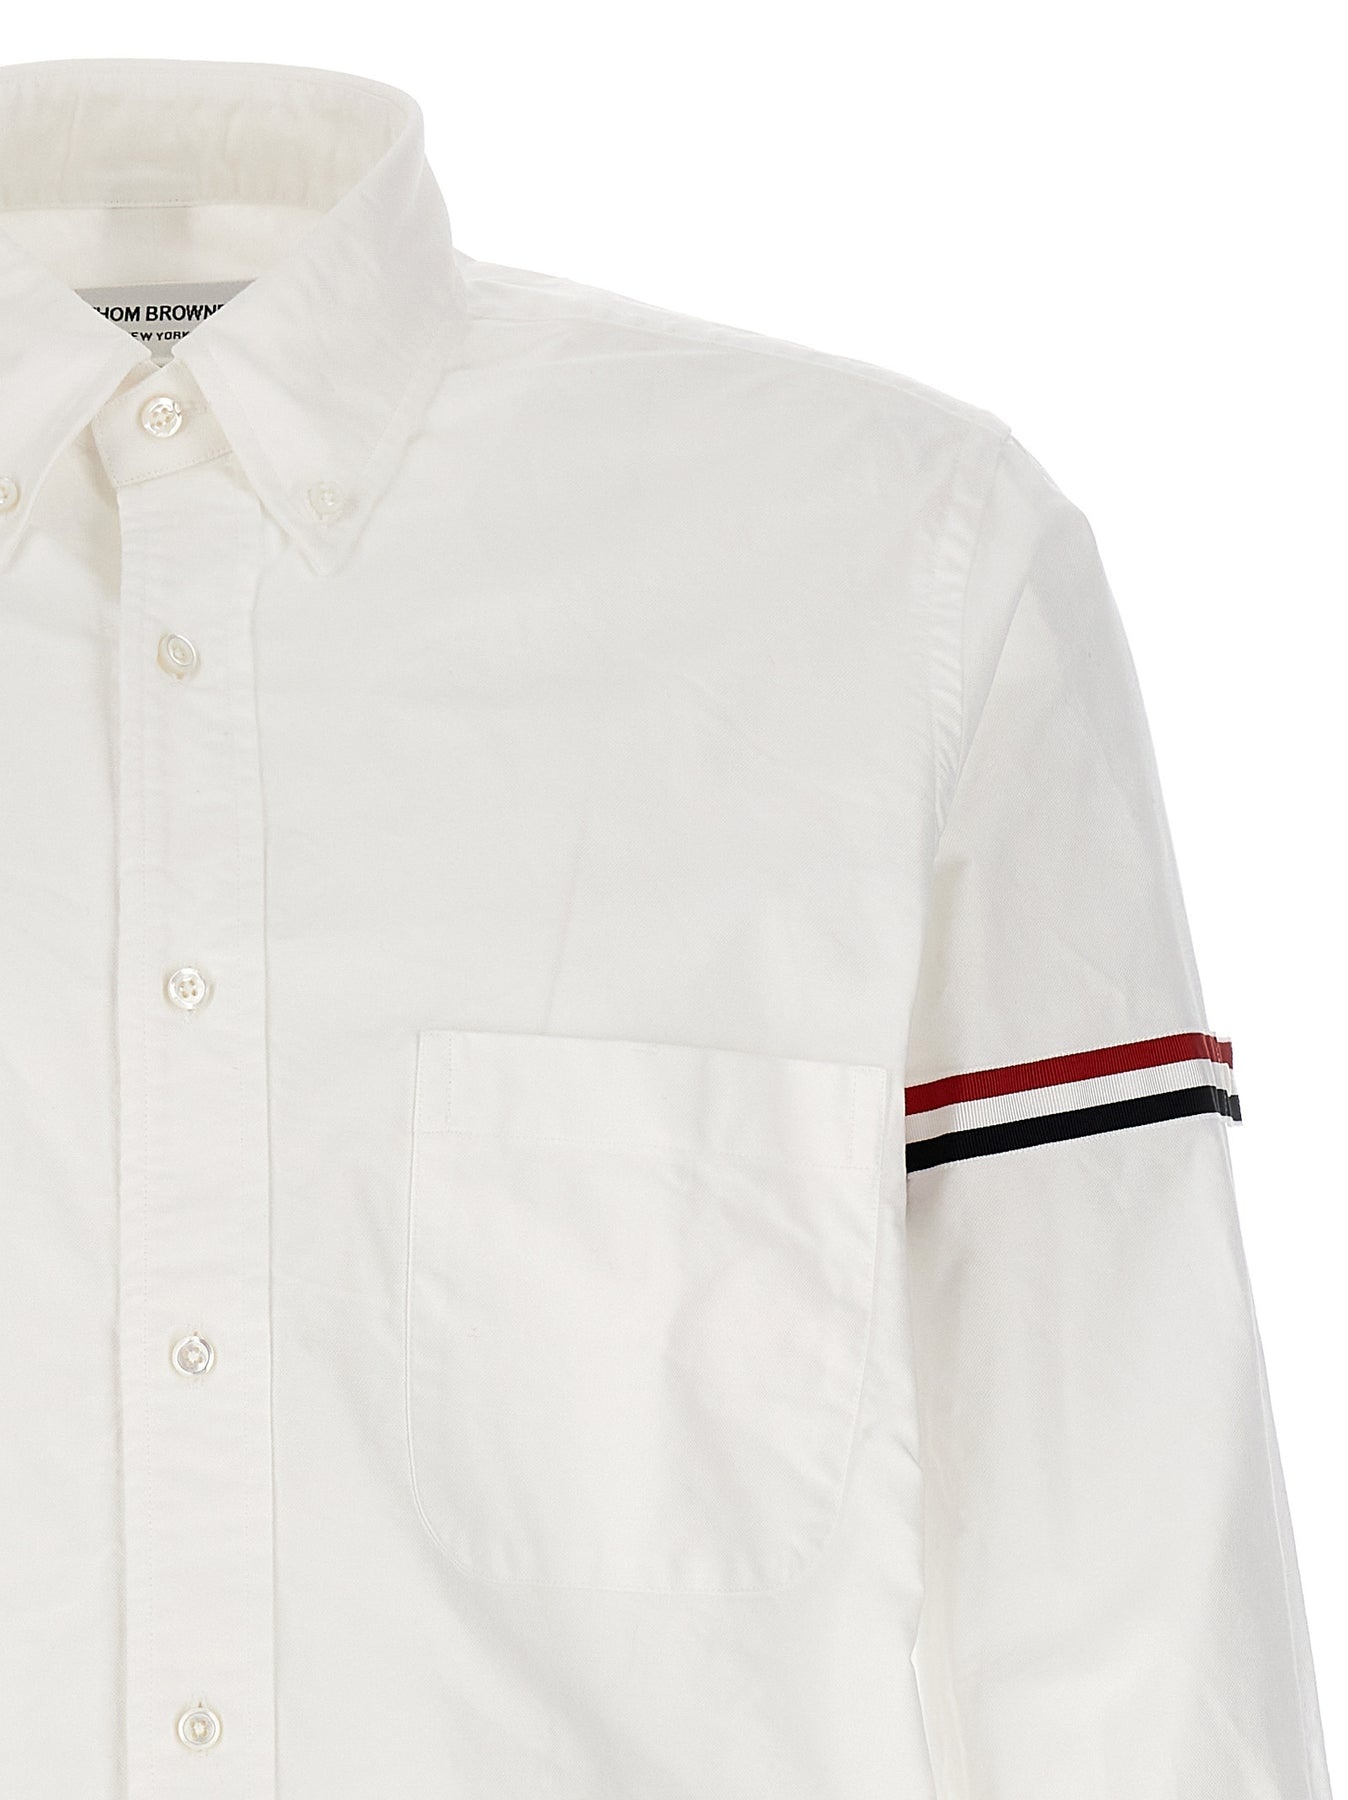 Rwb Shirt Shirt, Blouse White - 3